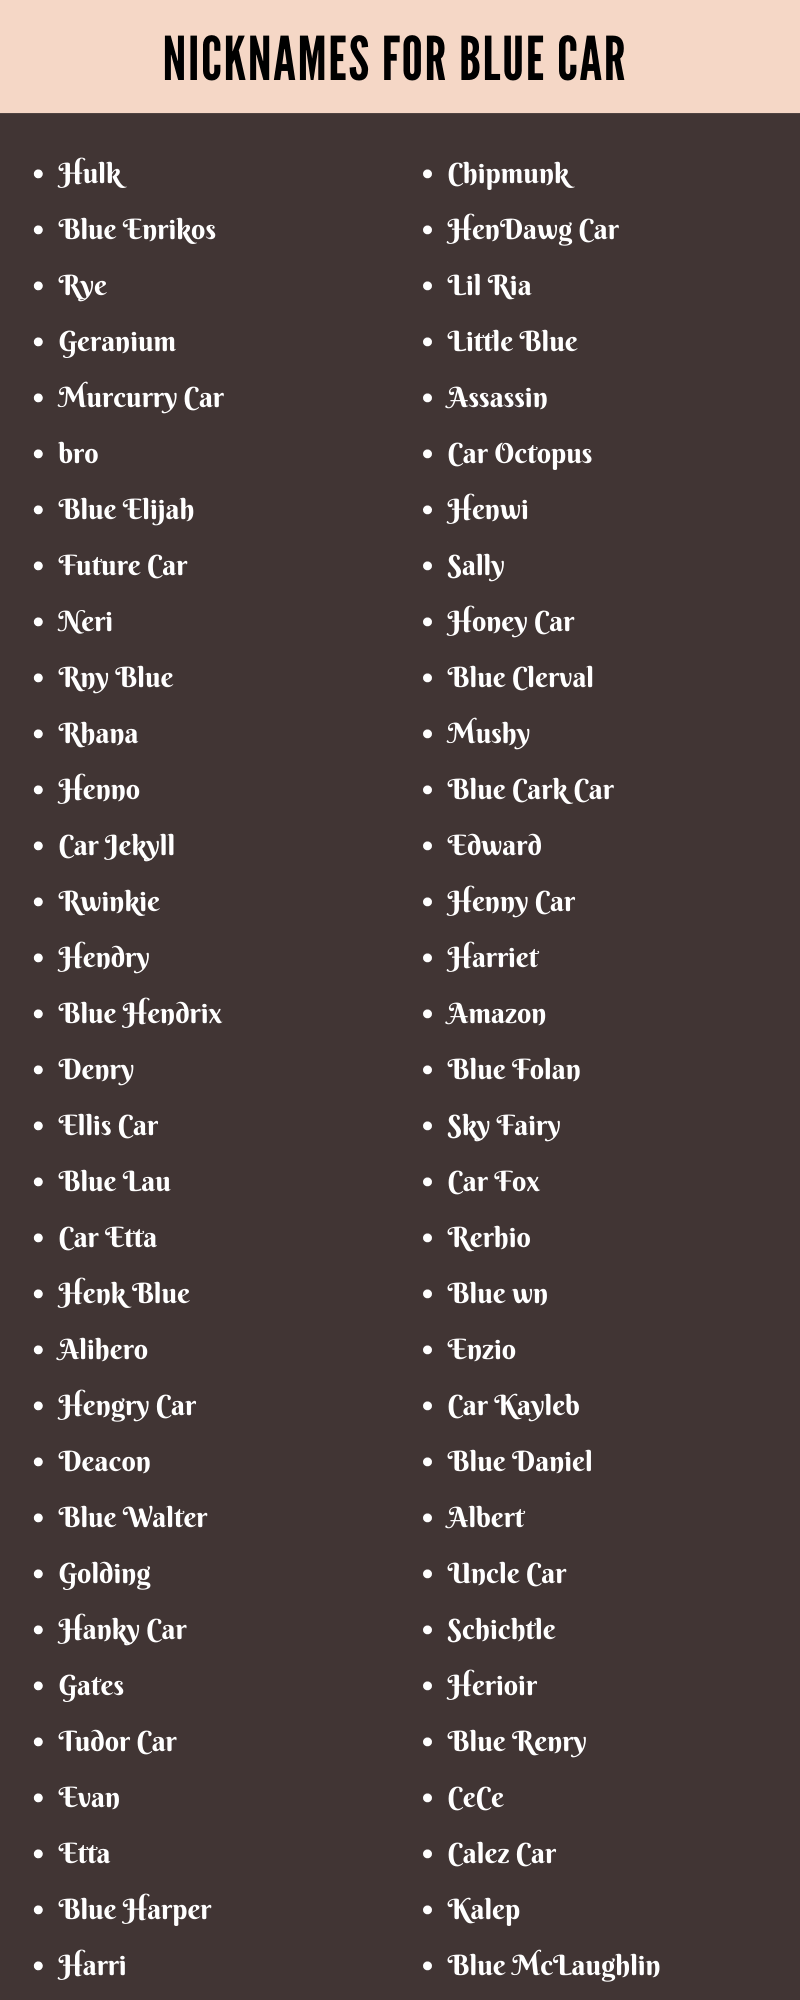 Nicknames for Blue Car